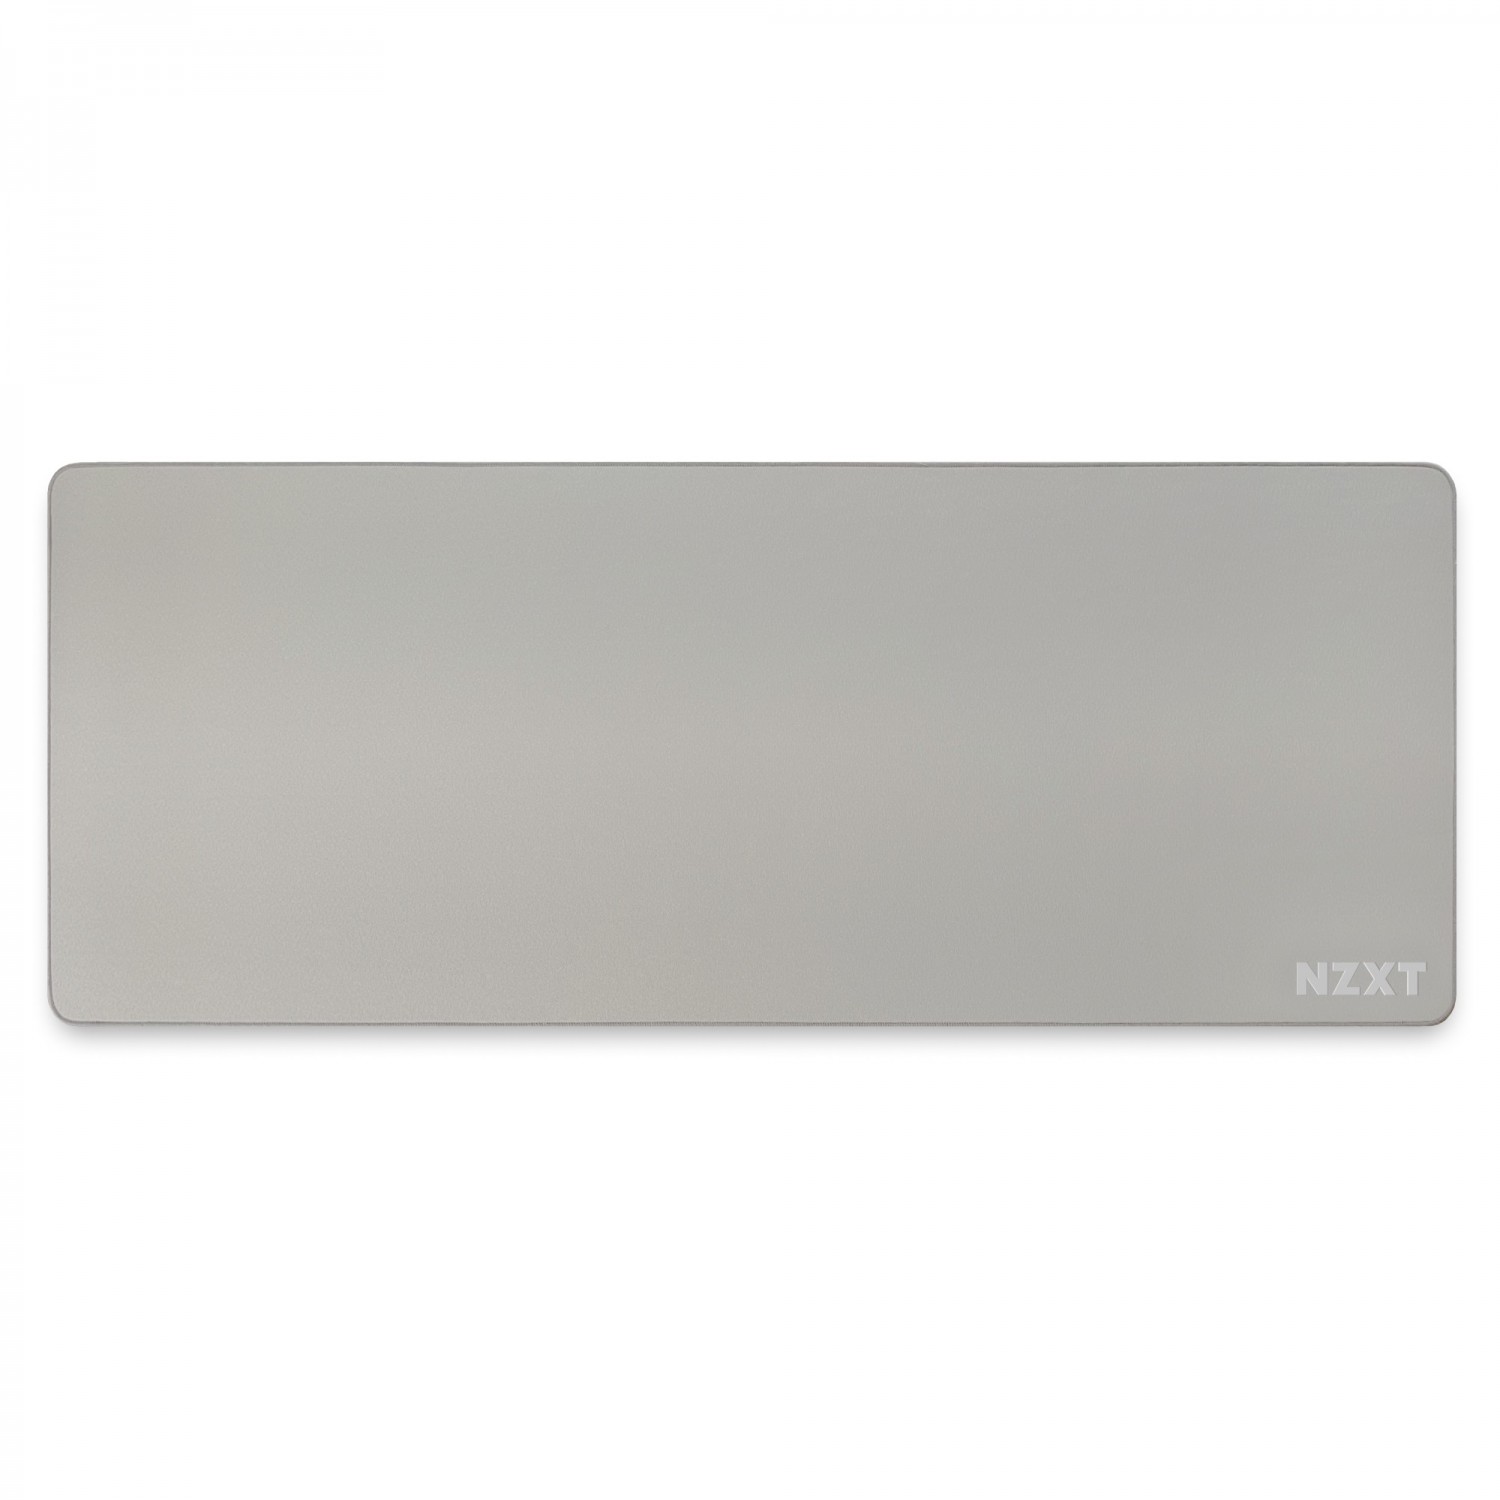 موس پد NZXT MXP700 - Matte Gray